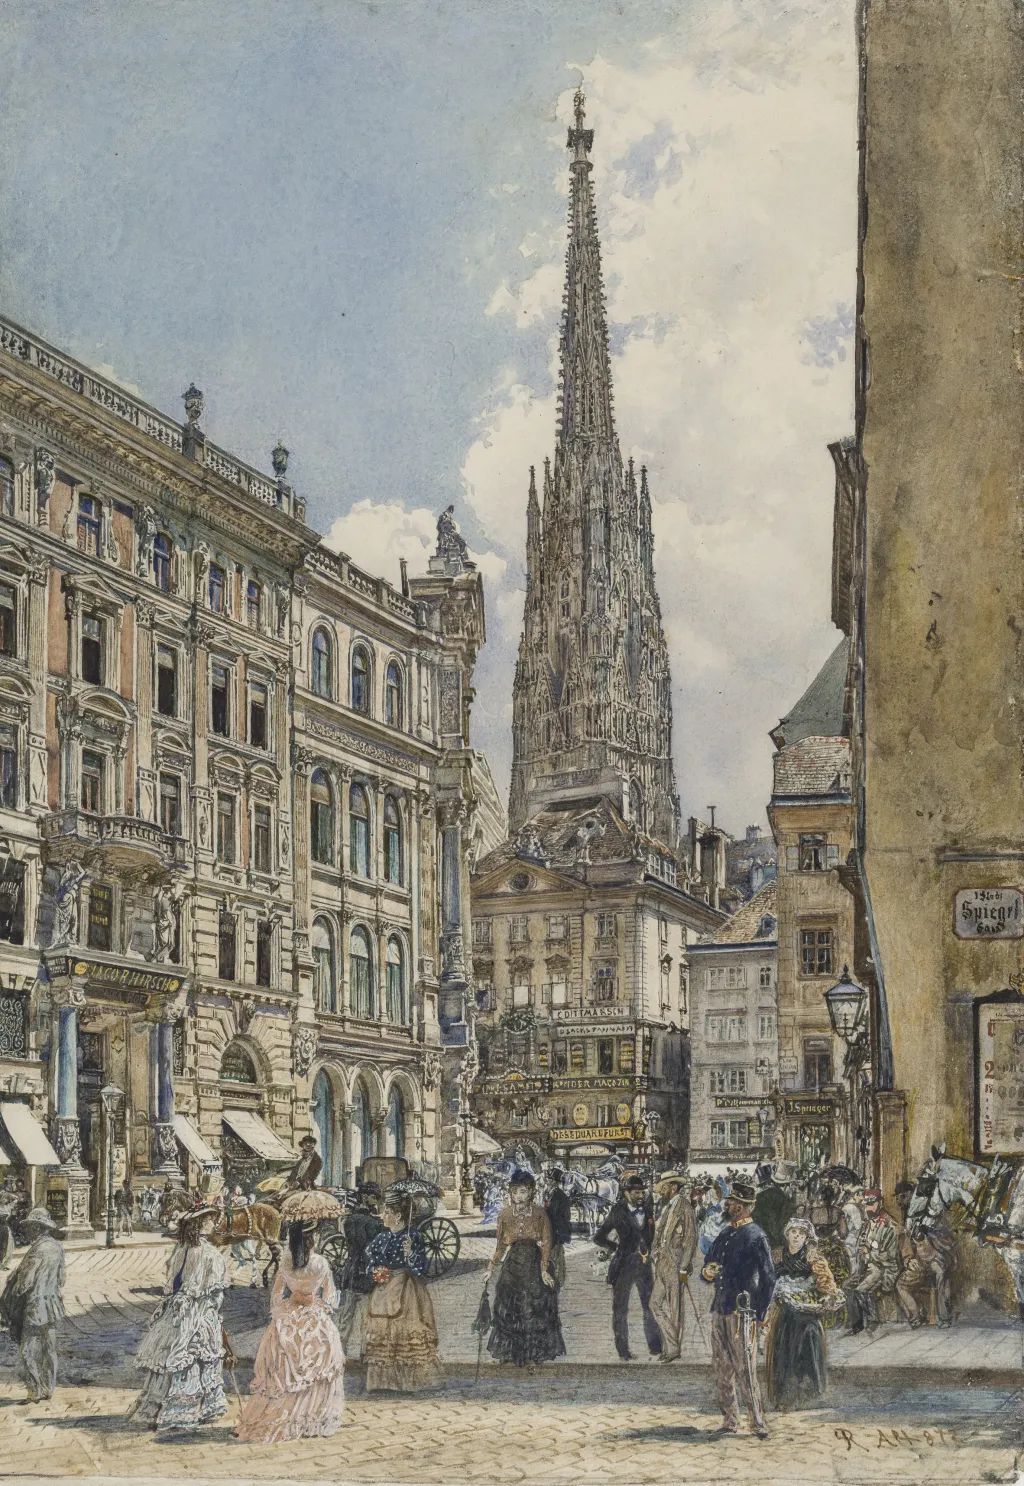 Výstava Akvarel mezi Prahou a Vídní (od 22. září do 7. ledna, Veletržní palác) se zaměřuje na akvarel, tedy práce s vodou ředěnými barvami na papíře. Zejména zdokumentuje tvorbu devatenáctého století, kdy tato výtvarná technika dosáhla největšího rozvoje a stala se součástí měšťanské a šlechtické výtvarné kultury